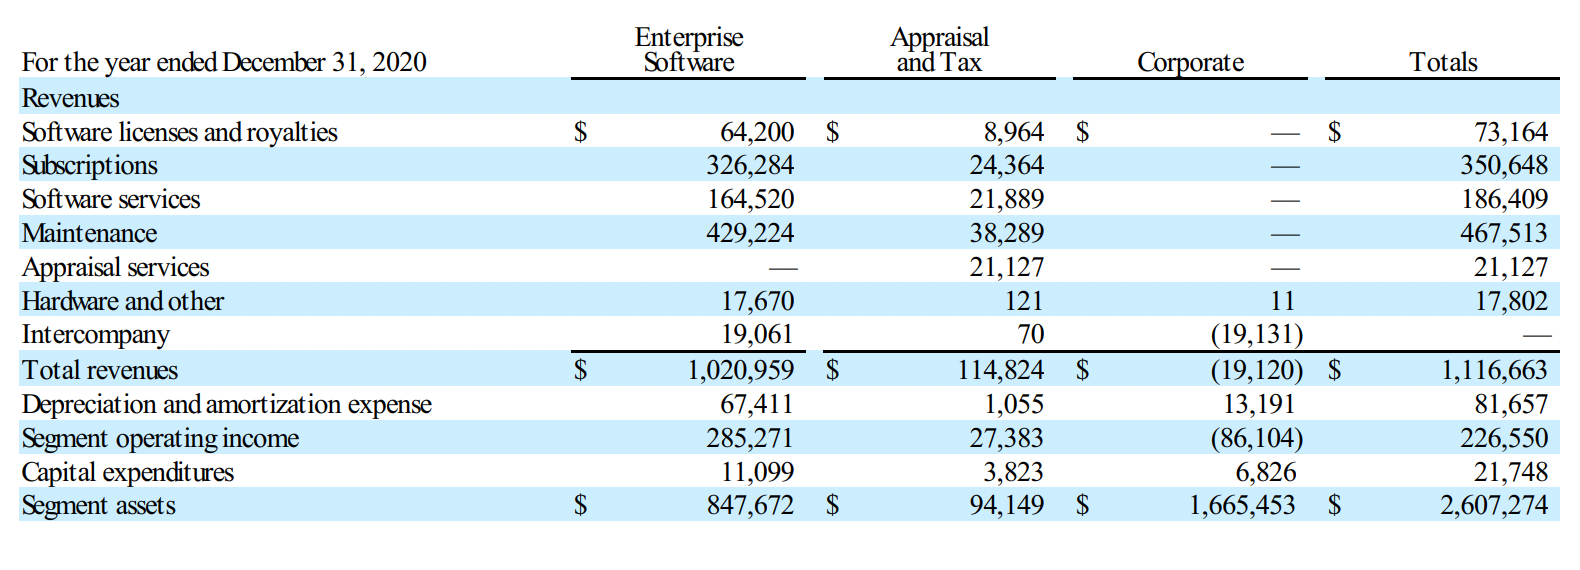 Финансовые показатели компании в тысячах долларов. Источник: годовой отчет компании, стр. F⁠-⁠29 (70)